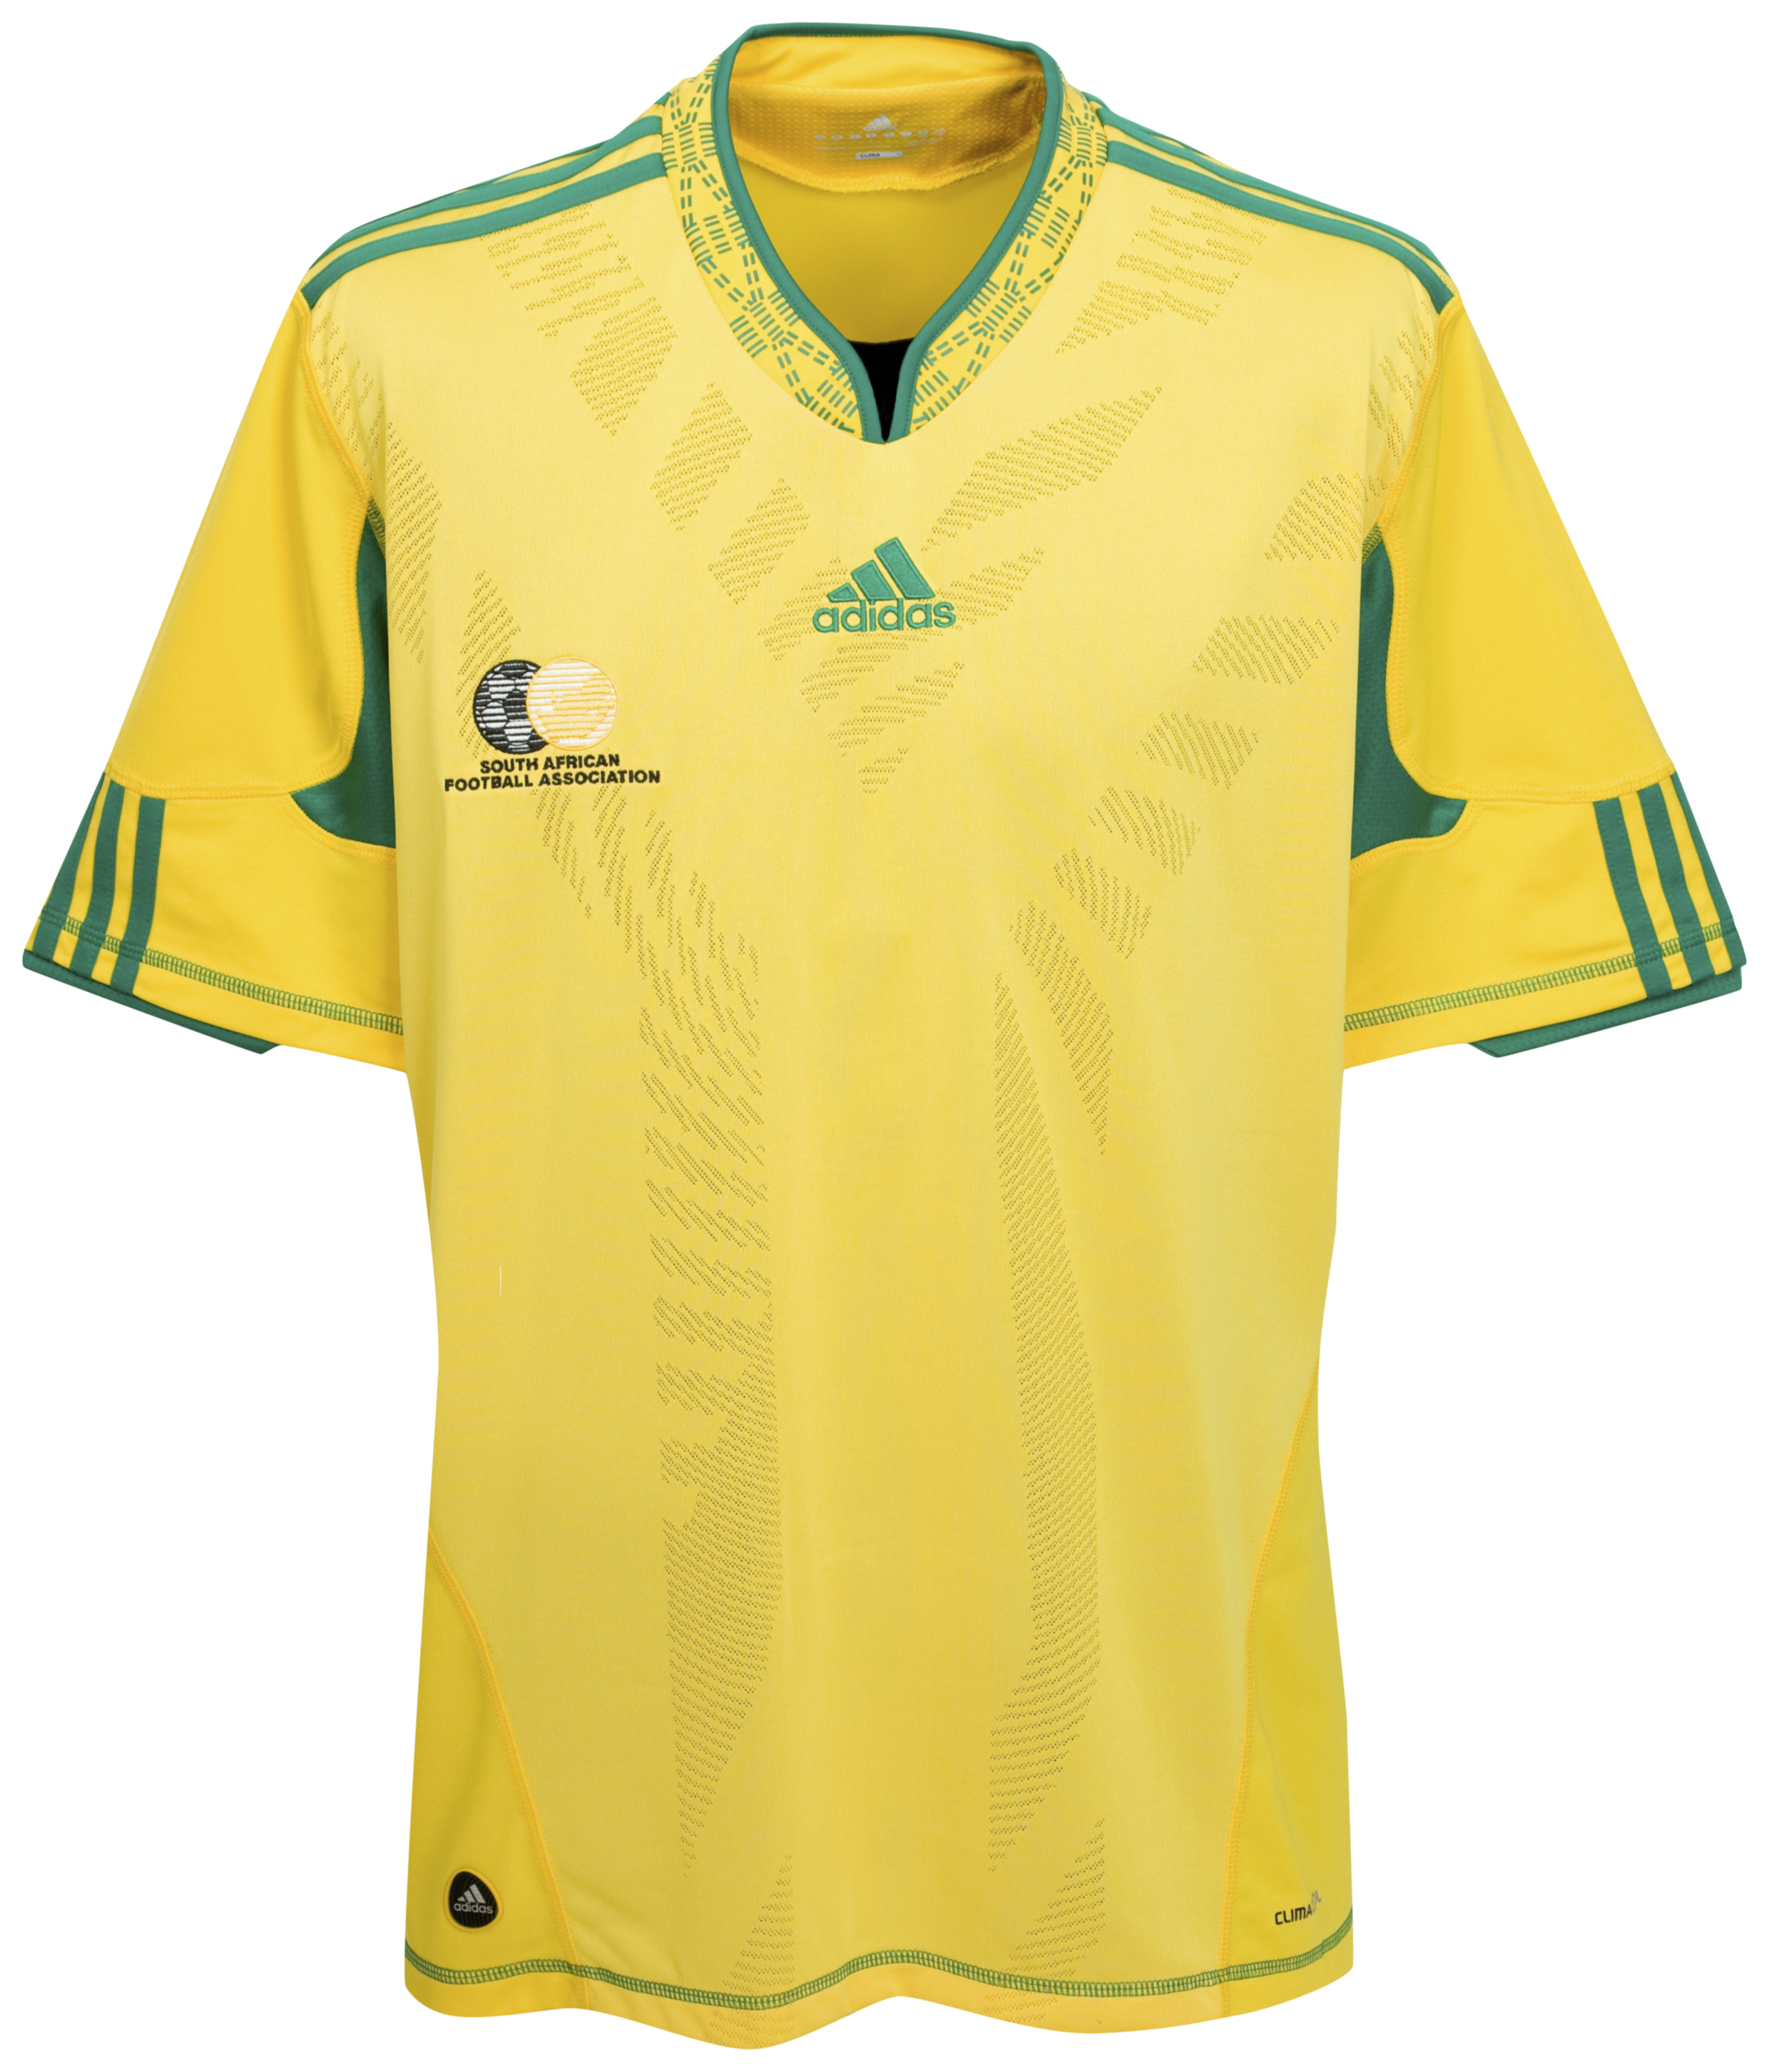 ملابس المنتخبات لكأس العالم ‎(2010)‎ Kb-63750